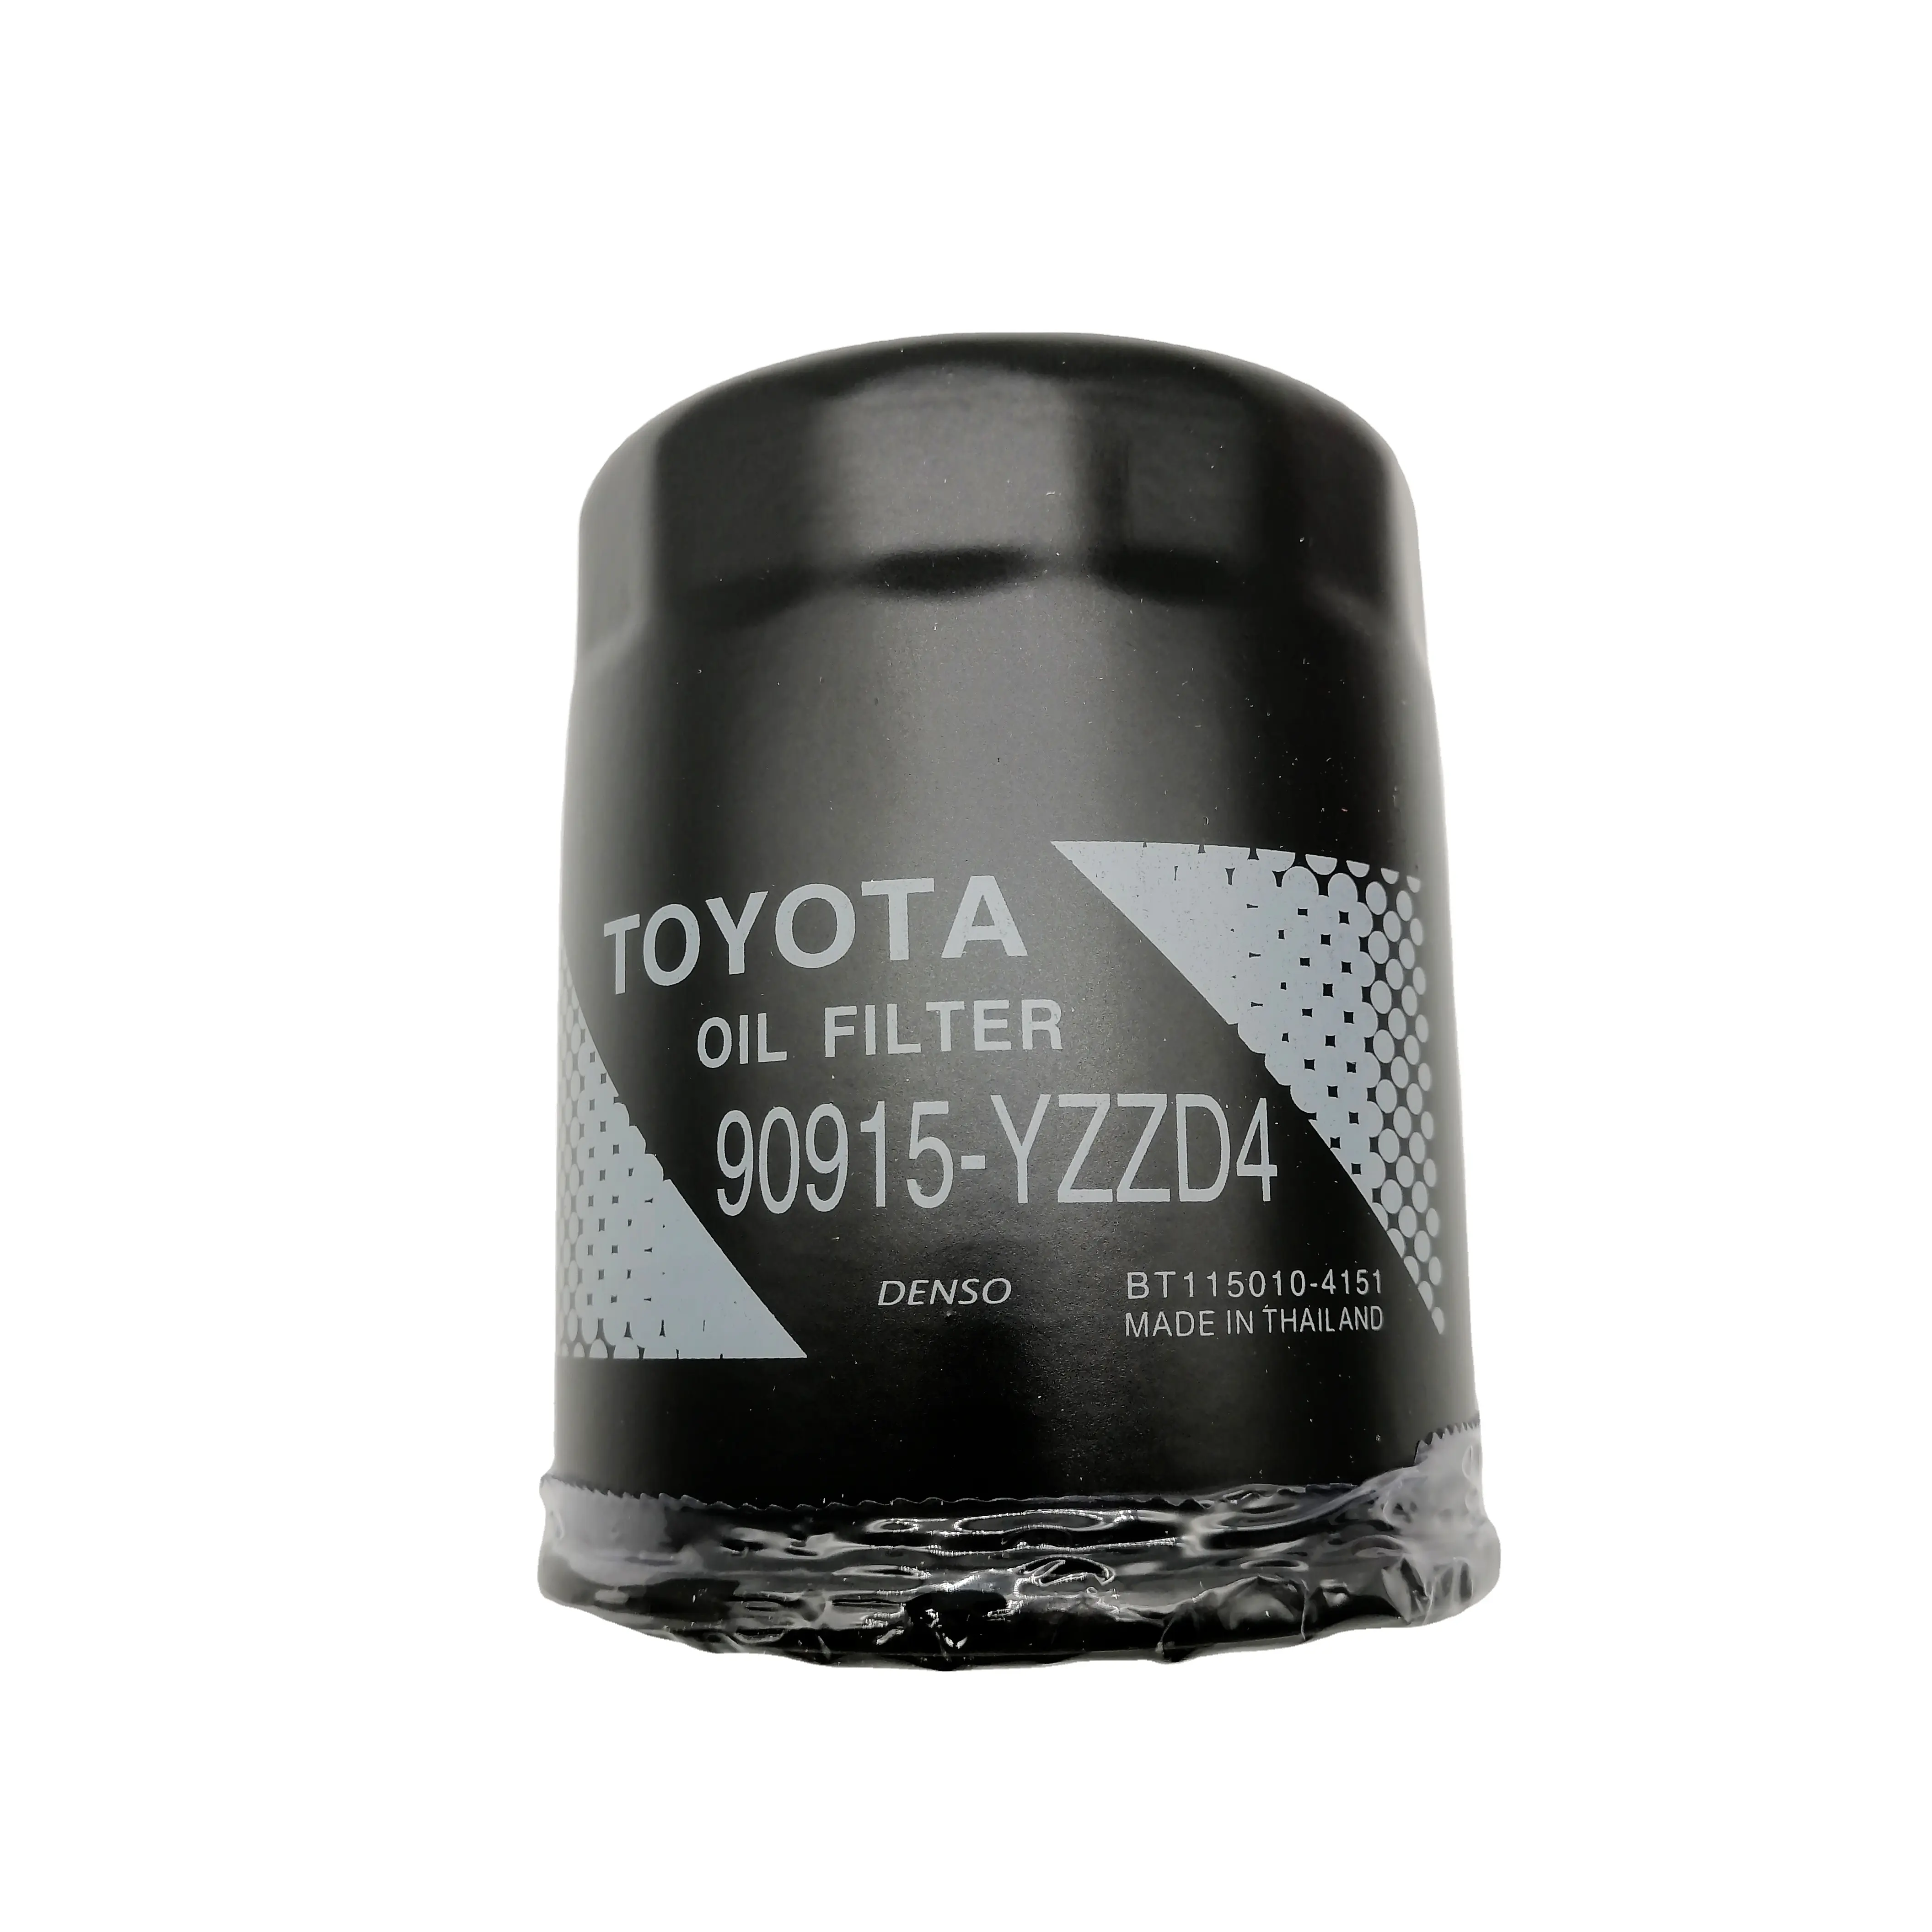 HYS-filtro de aceite para coche toyota, filtro de aceite automático, 15208-13013 CMD107509 90915-YZZD4, precio de fábrica, venta al por mayor